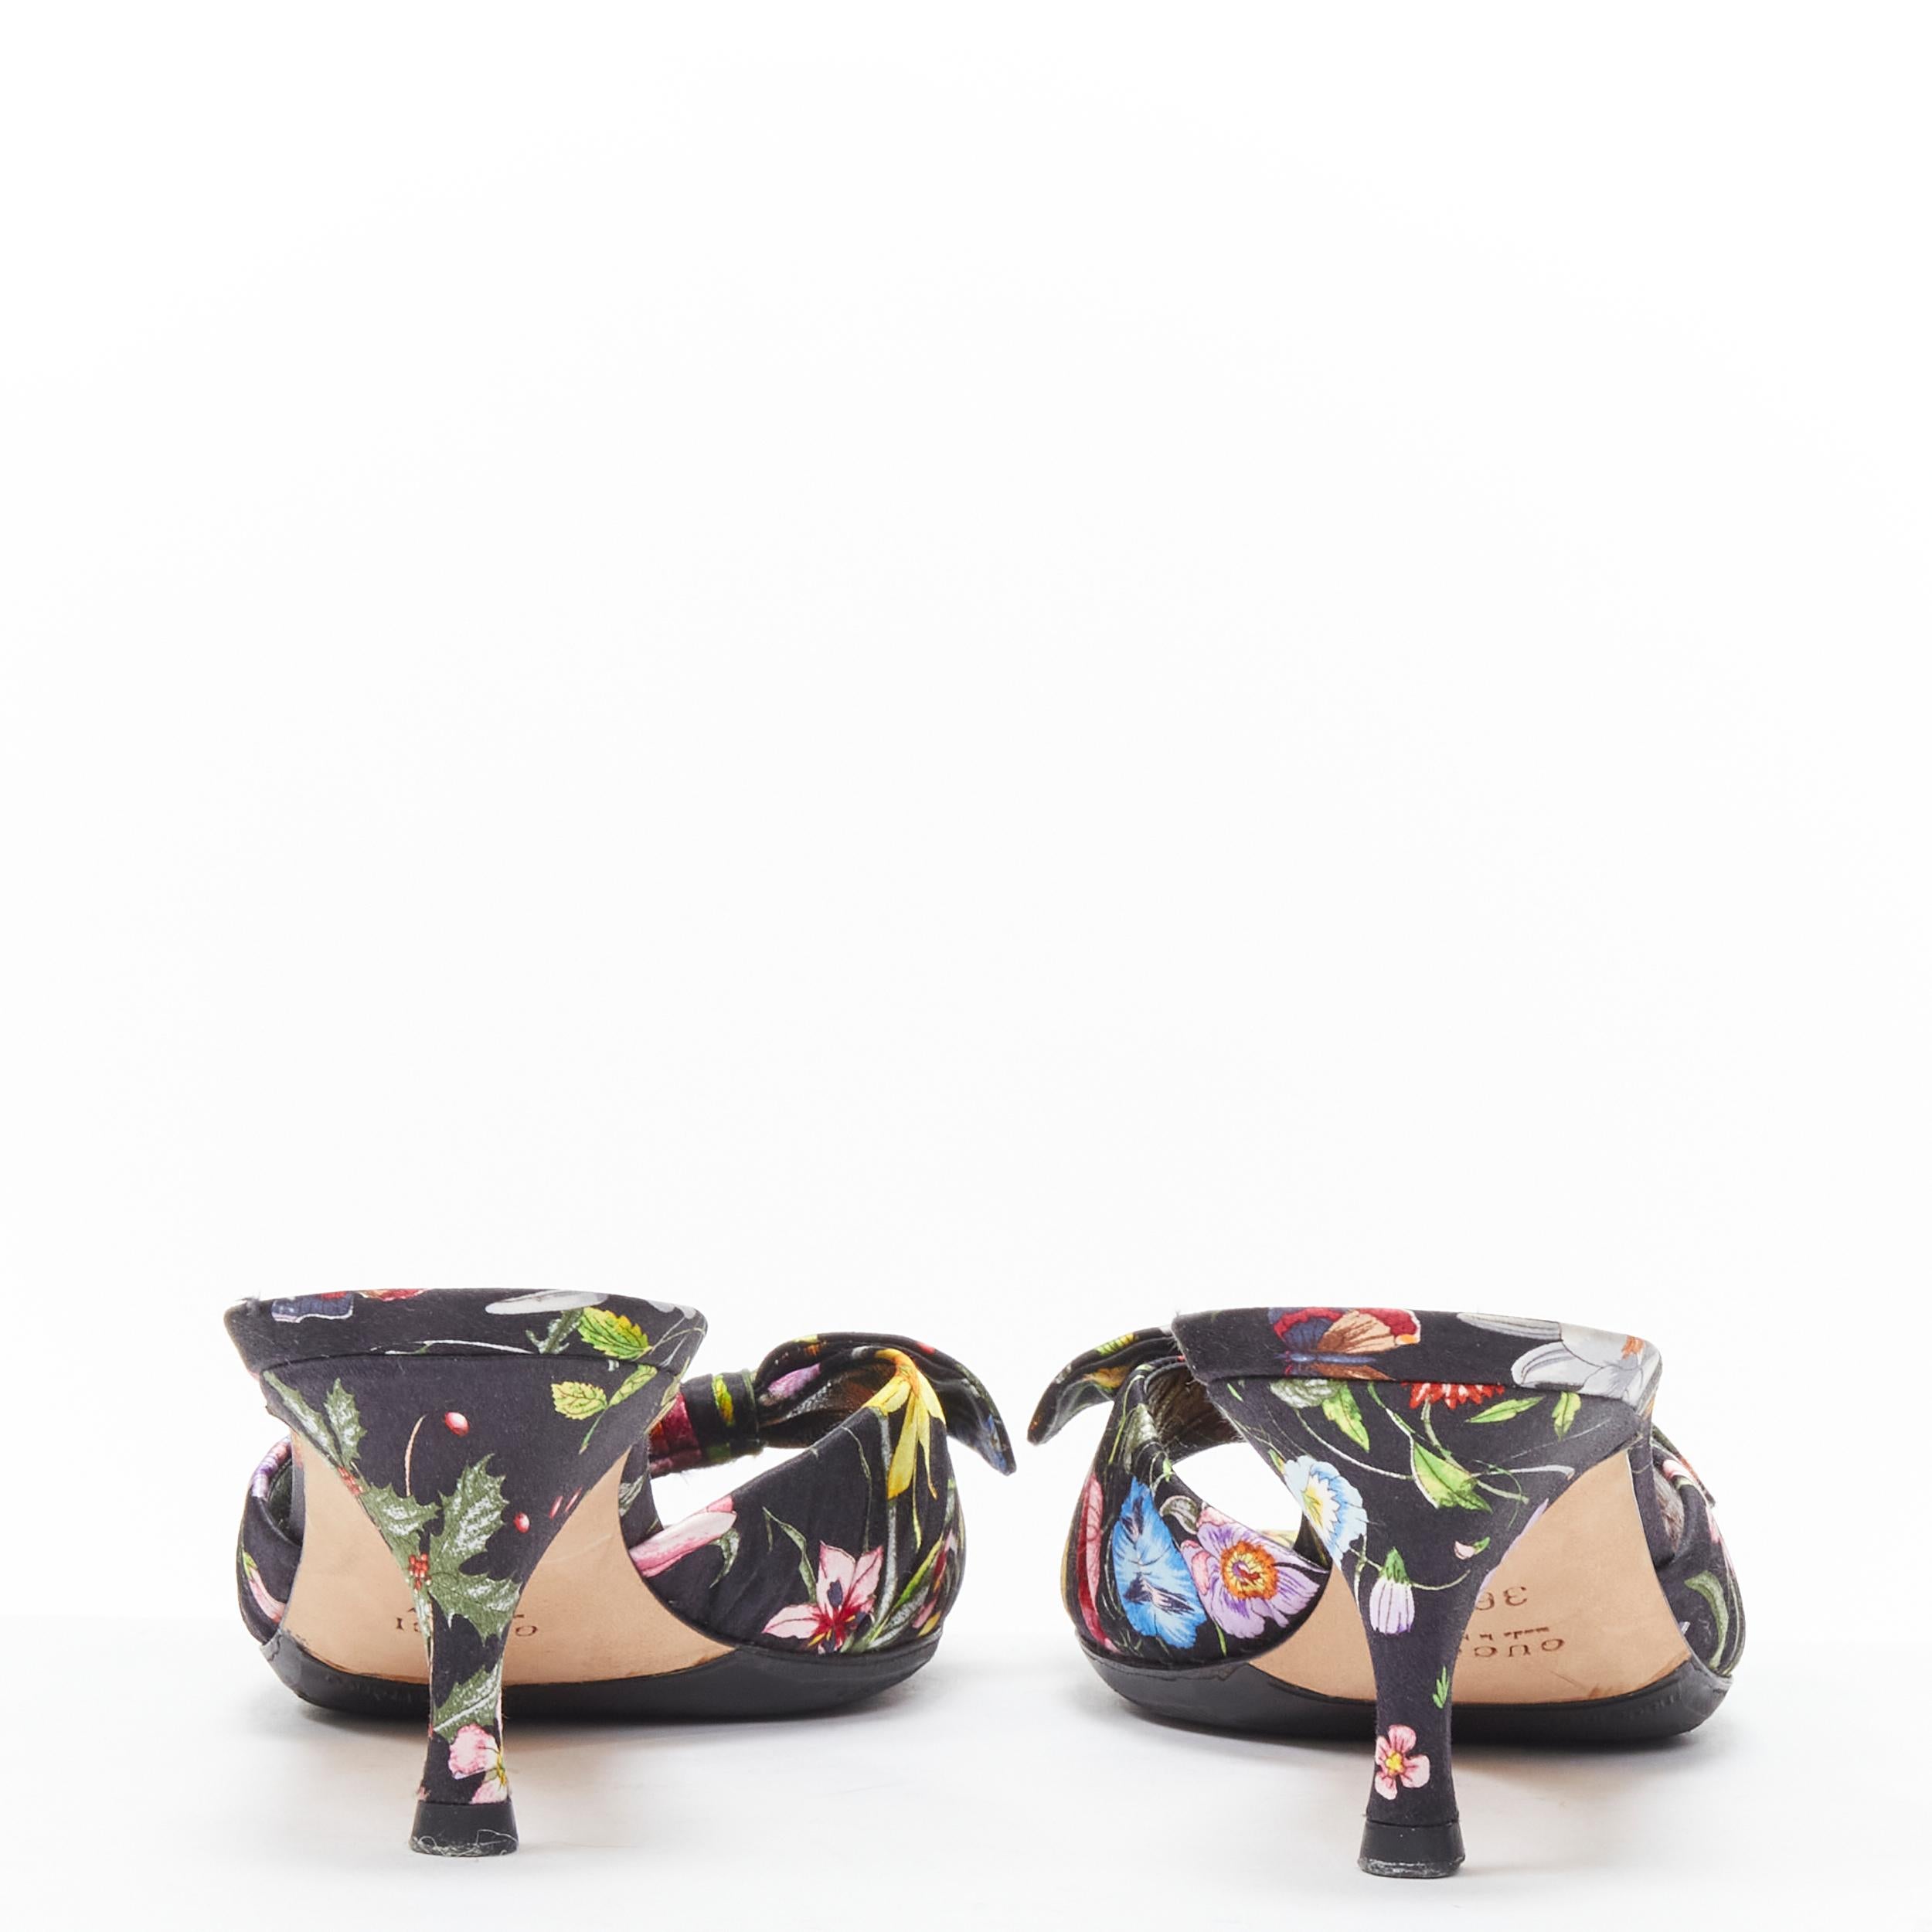 floral print heels